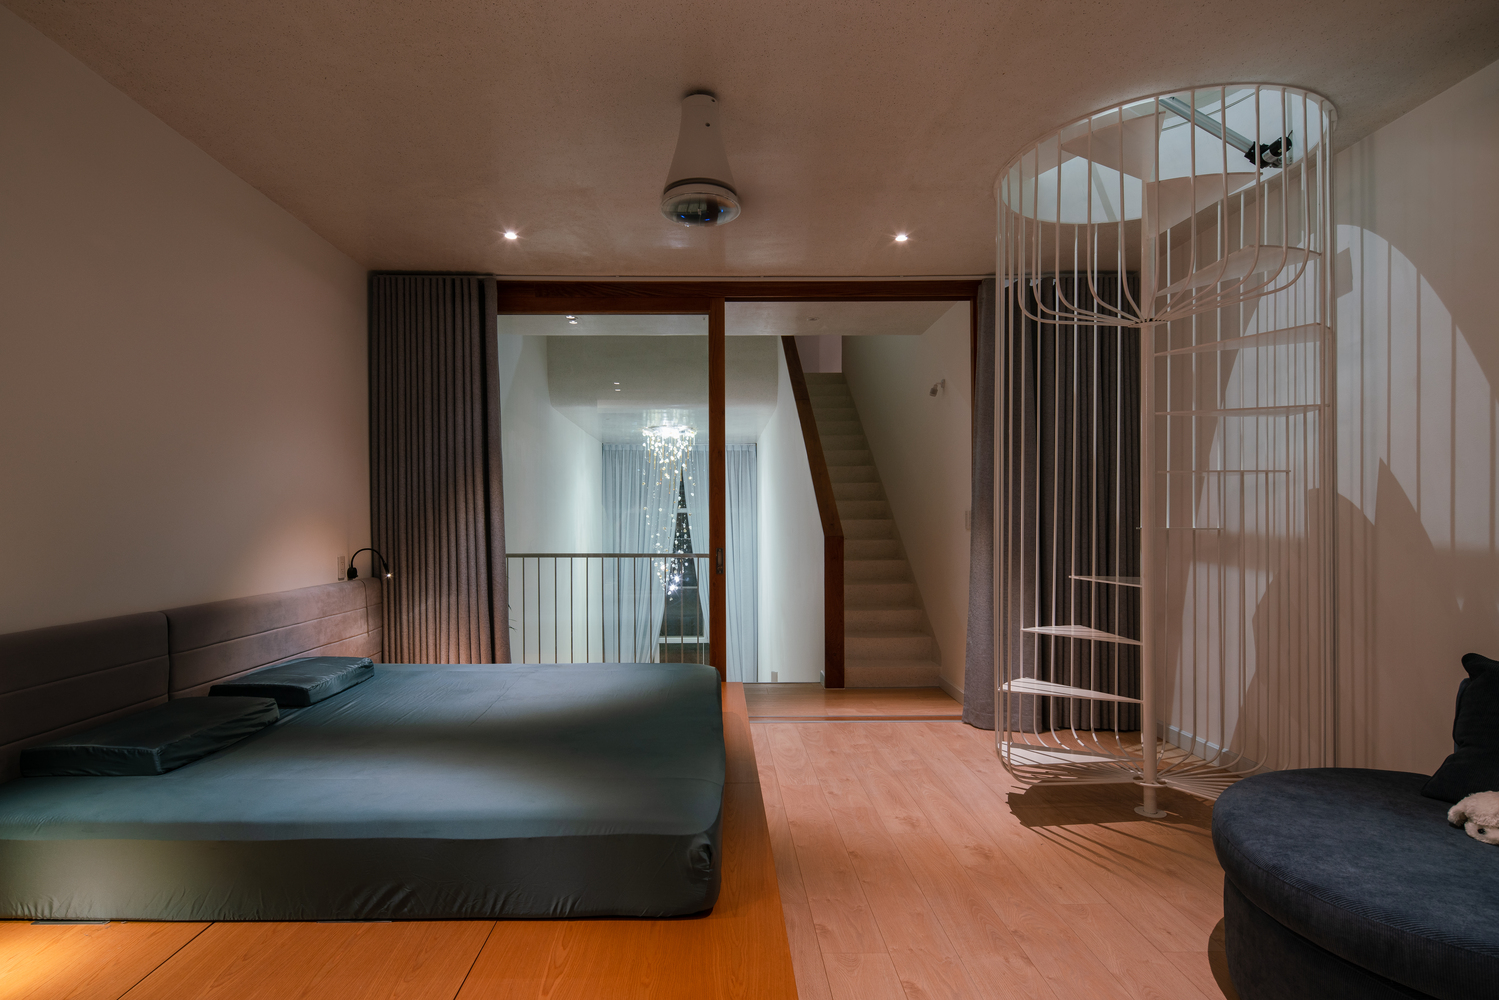 Thiết kế nội thất phòng ngủ hiện đại, tối giản, không phụ kiện rườm rà.